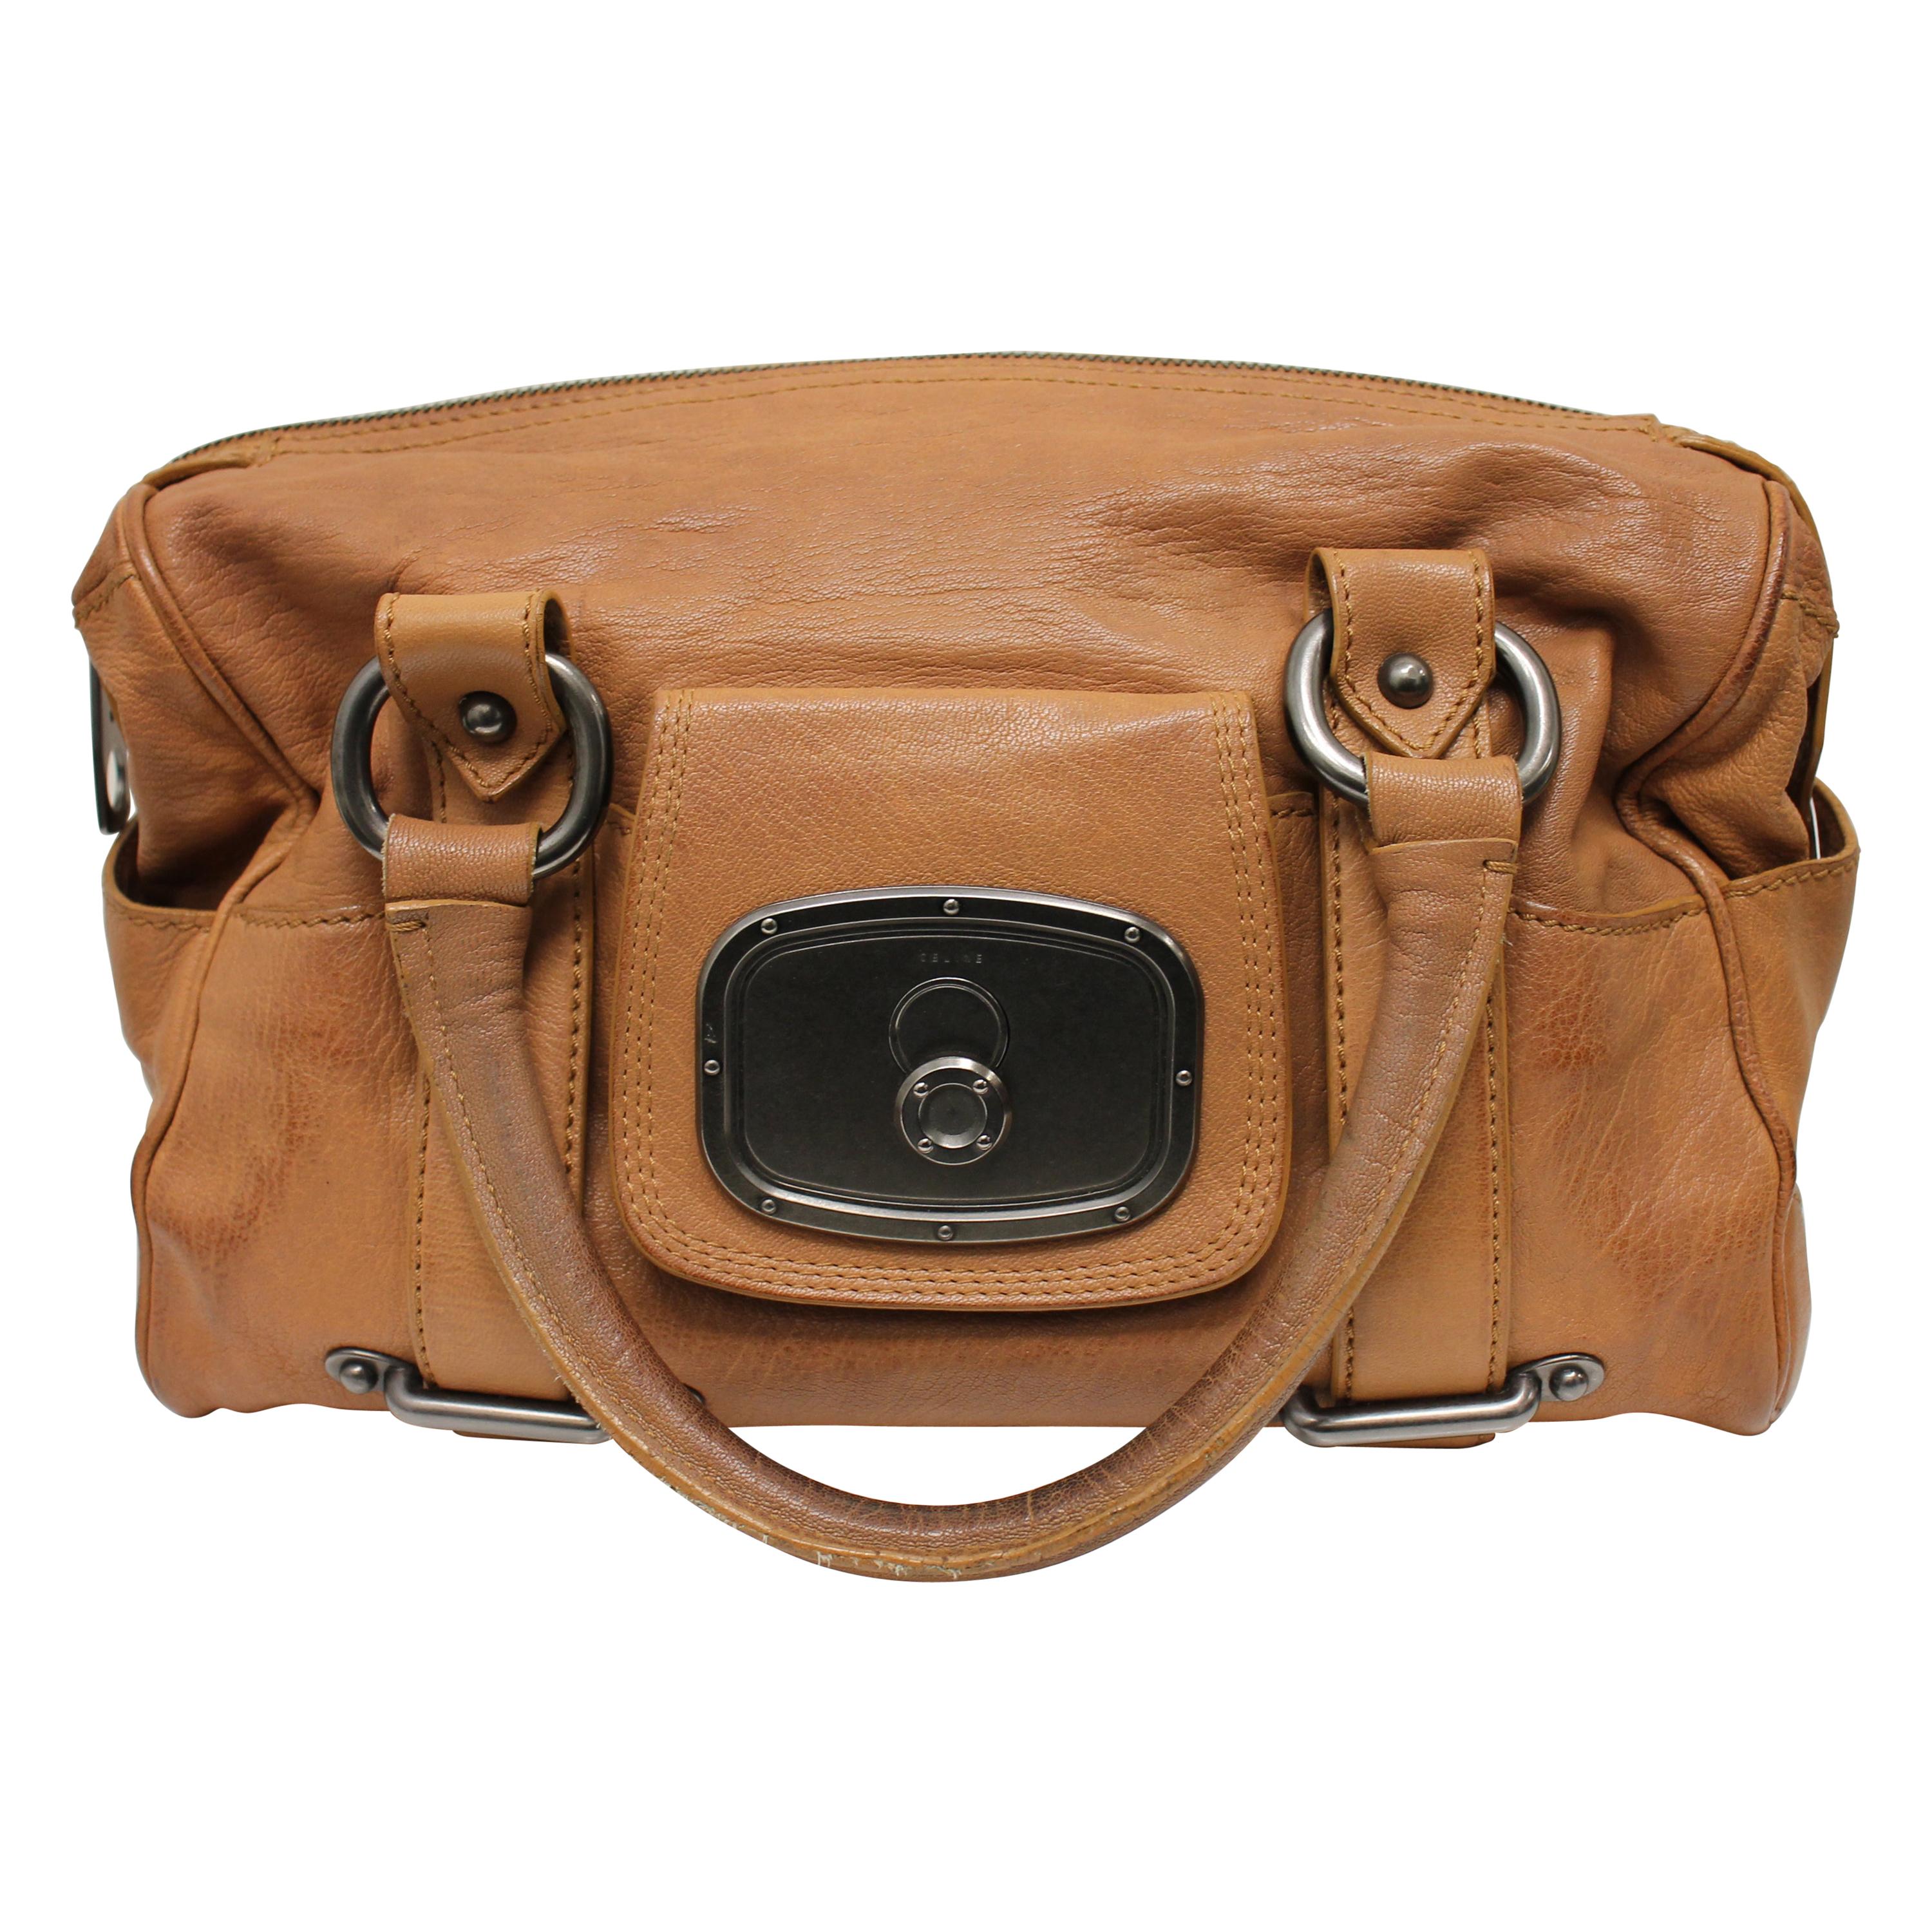 Celine Leather Boogie Bag For Sale